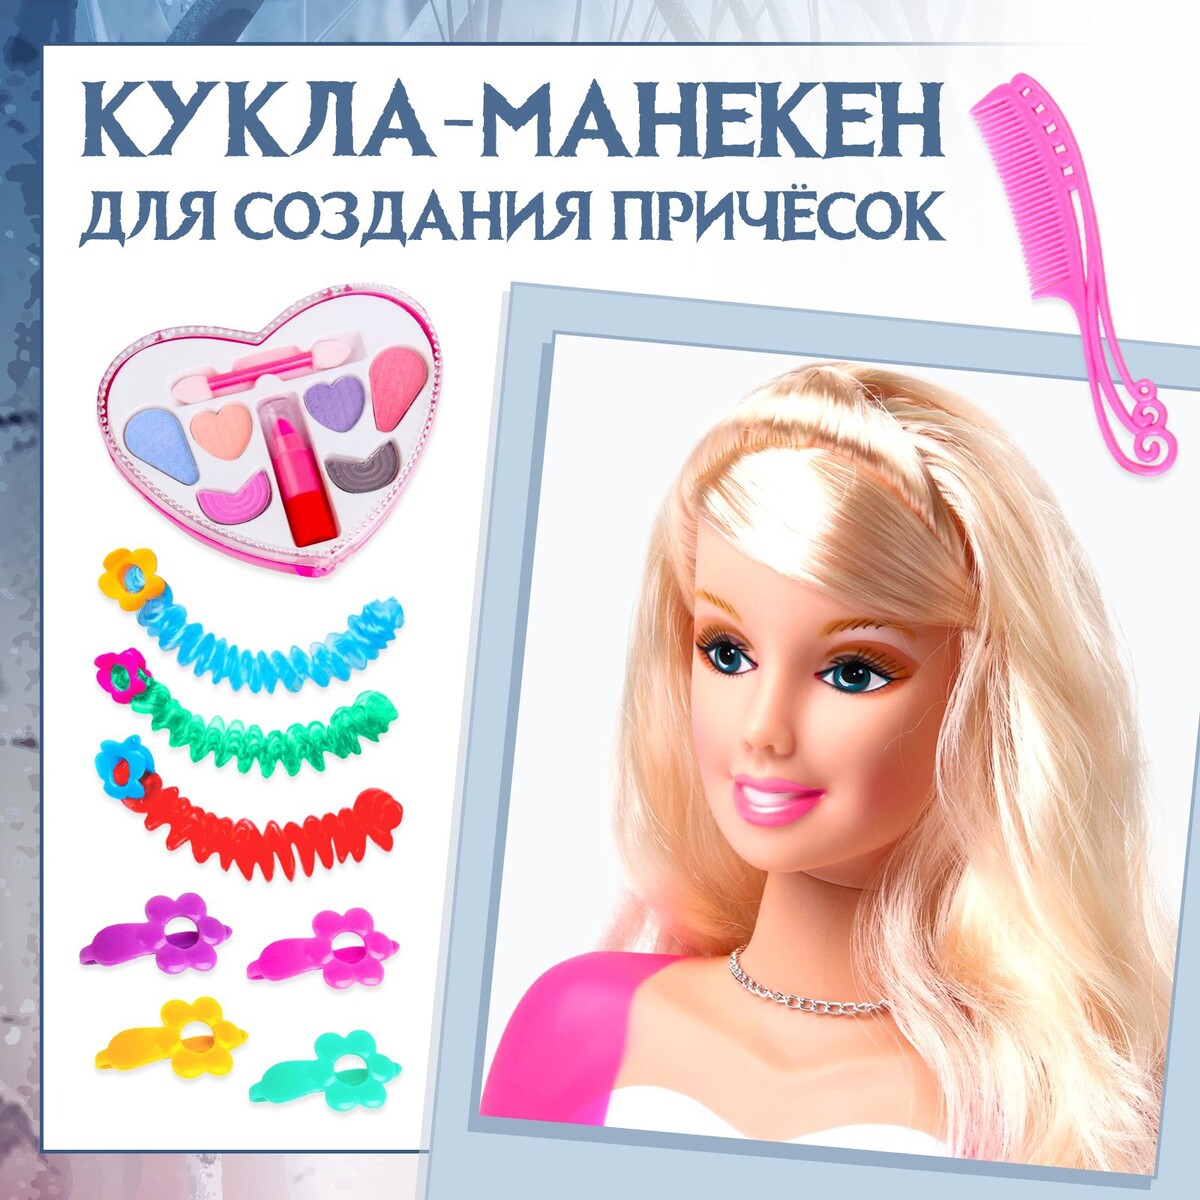 Кукла манекен для создания прически, с аксессуарами sharktoys кукла манекен для создания причёсок с аксессуарами блондинка 18600009